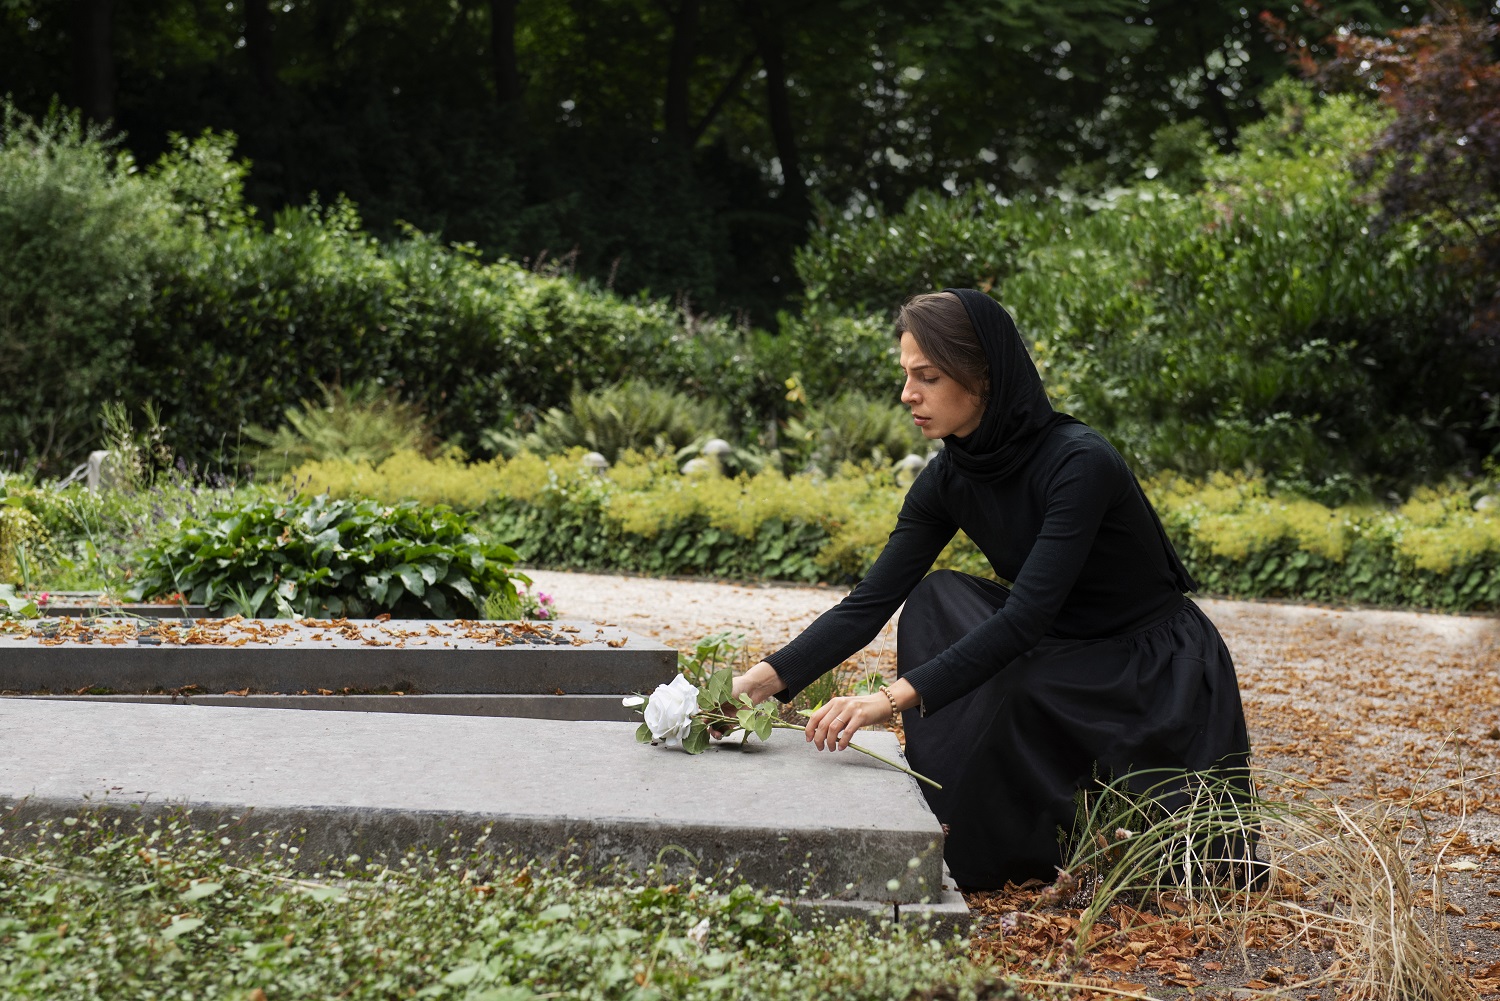 Uma imagem de uma moça de preto em um cemitério pensando no que acontece depois da morte.